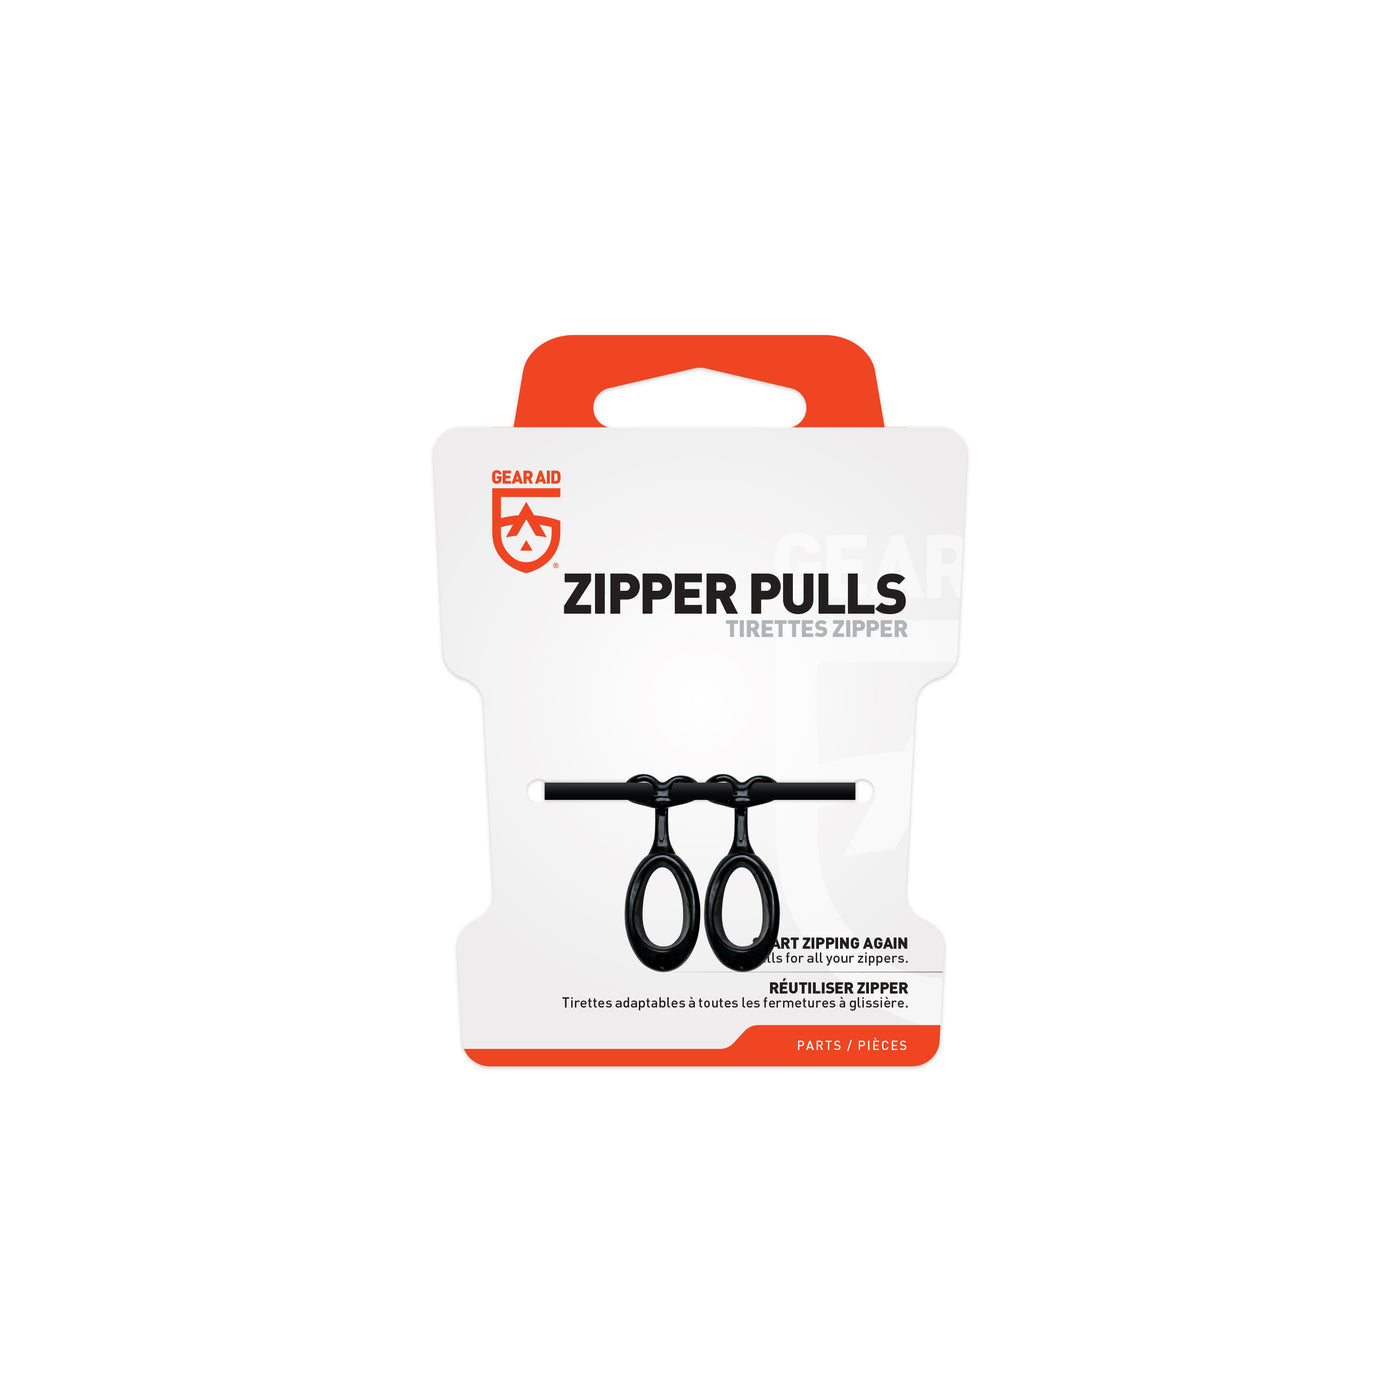 Gear Aid - Zipper Pull 2-Pack